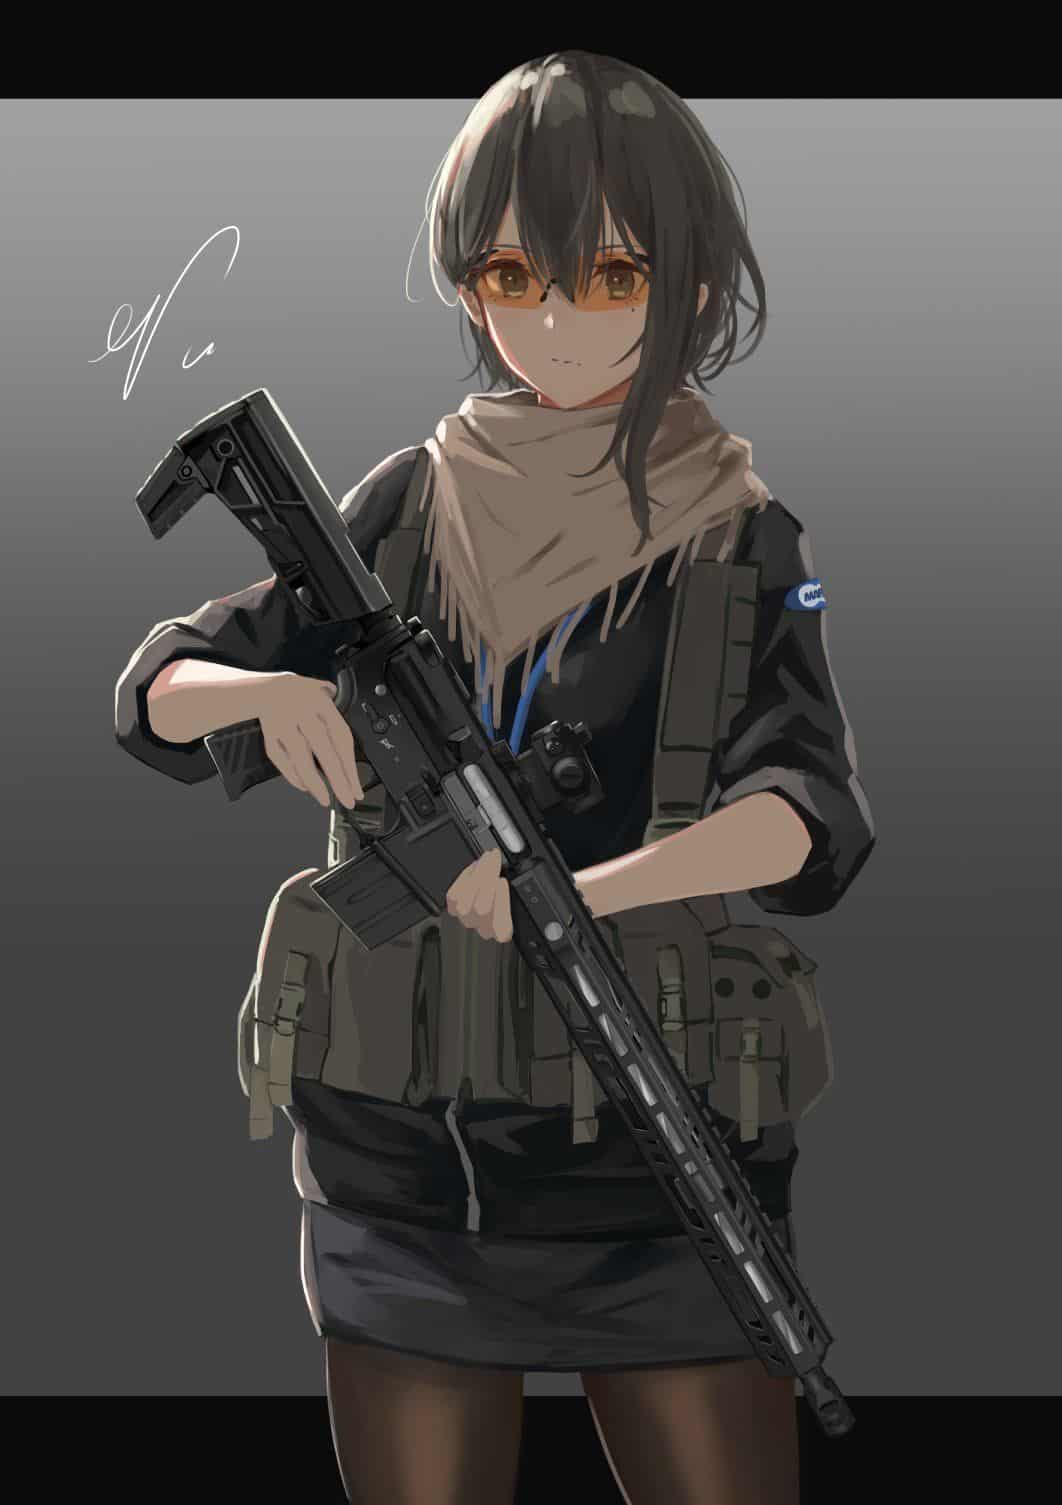 Hình Anime con gái cầm súng ngầu chất nhất